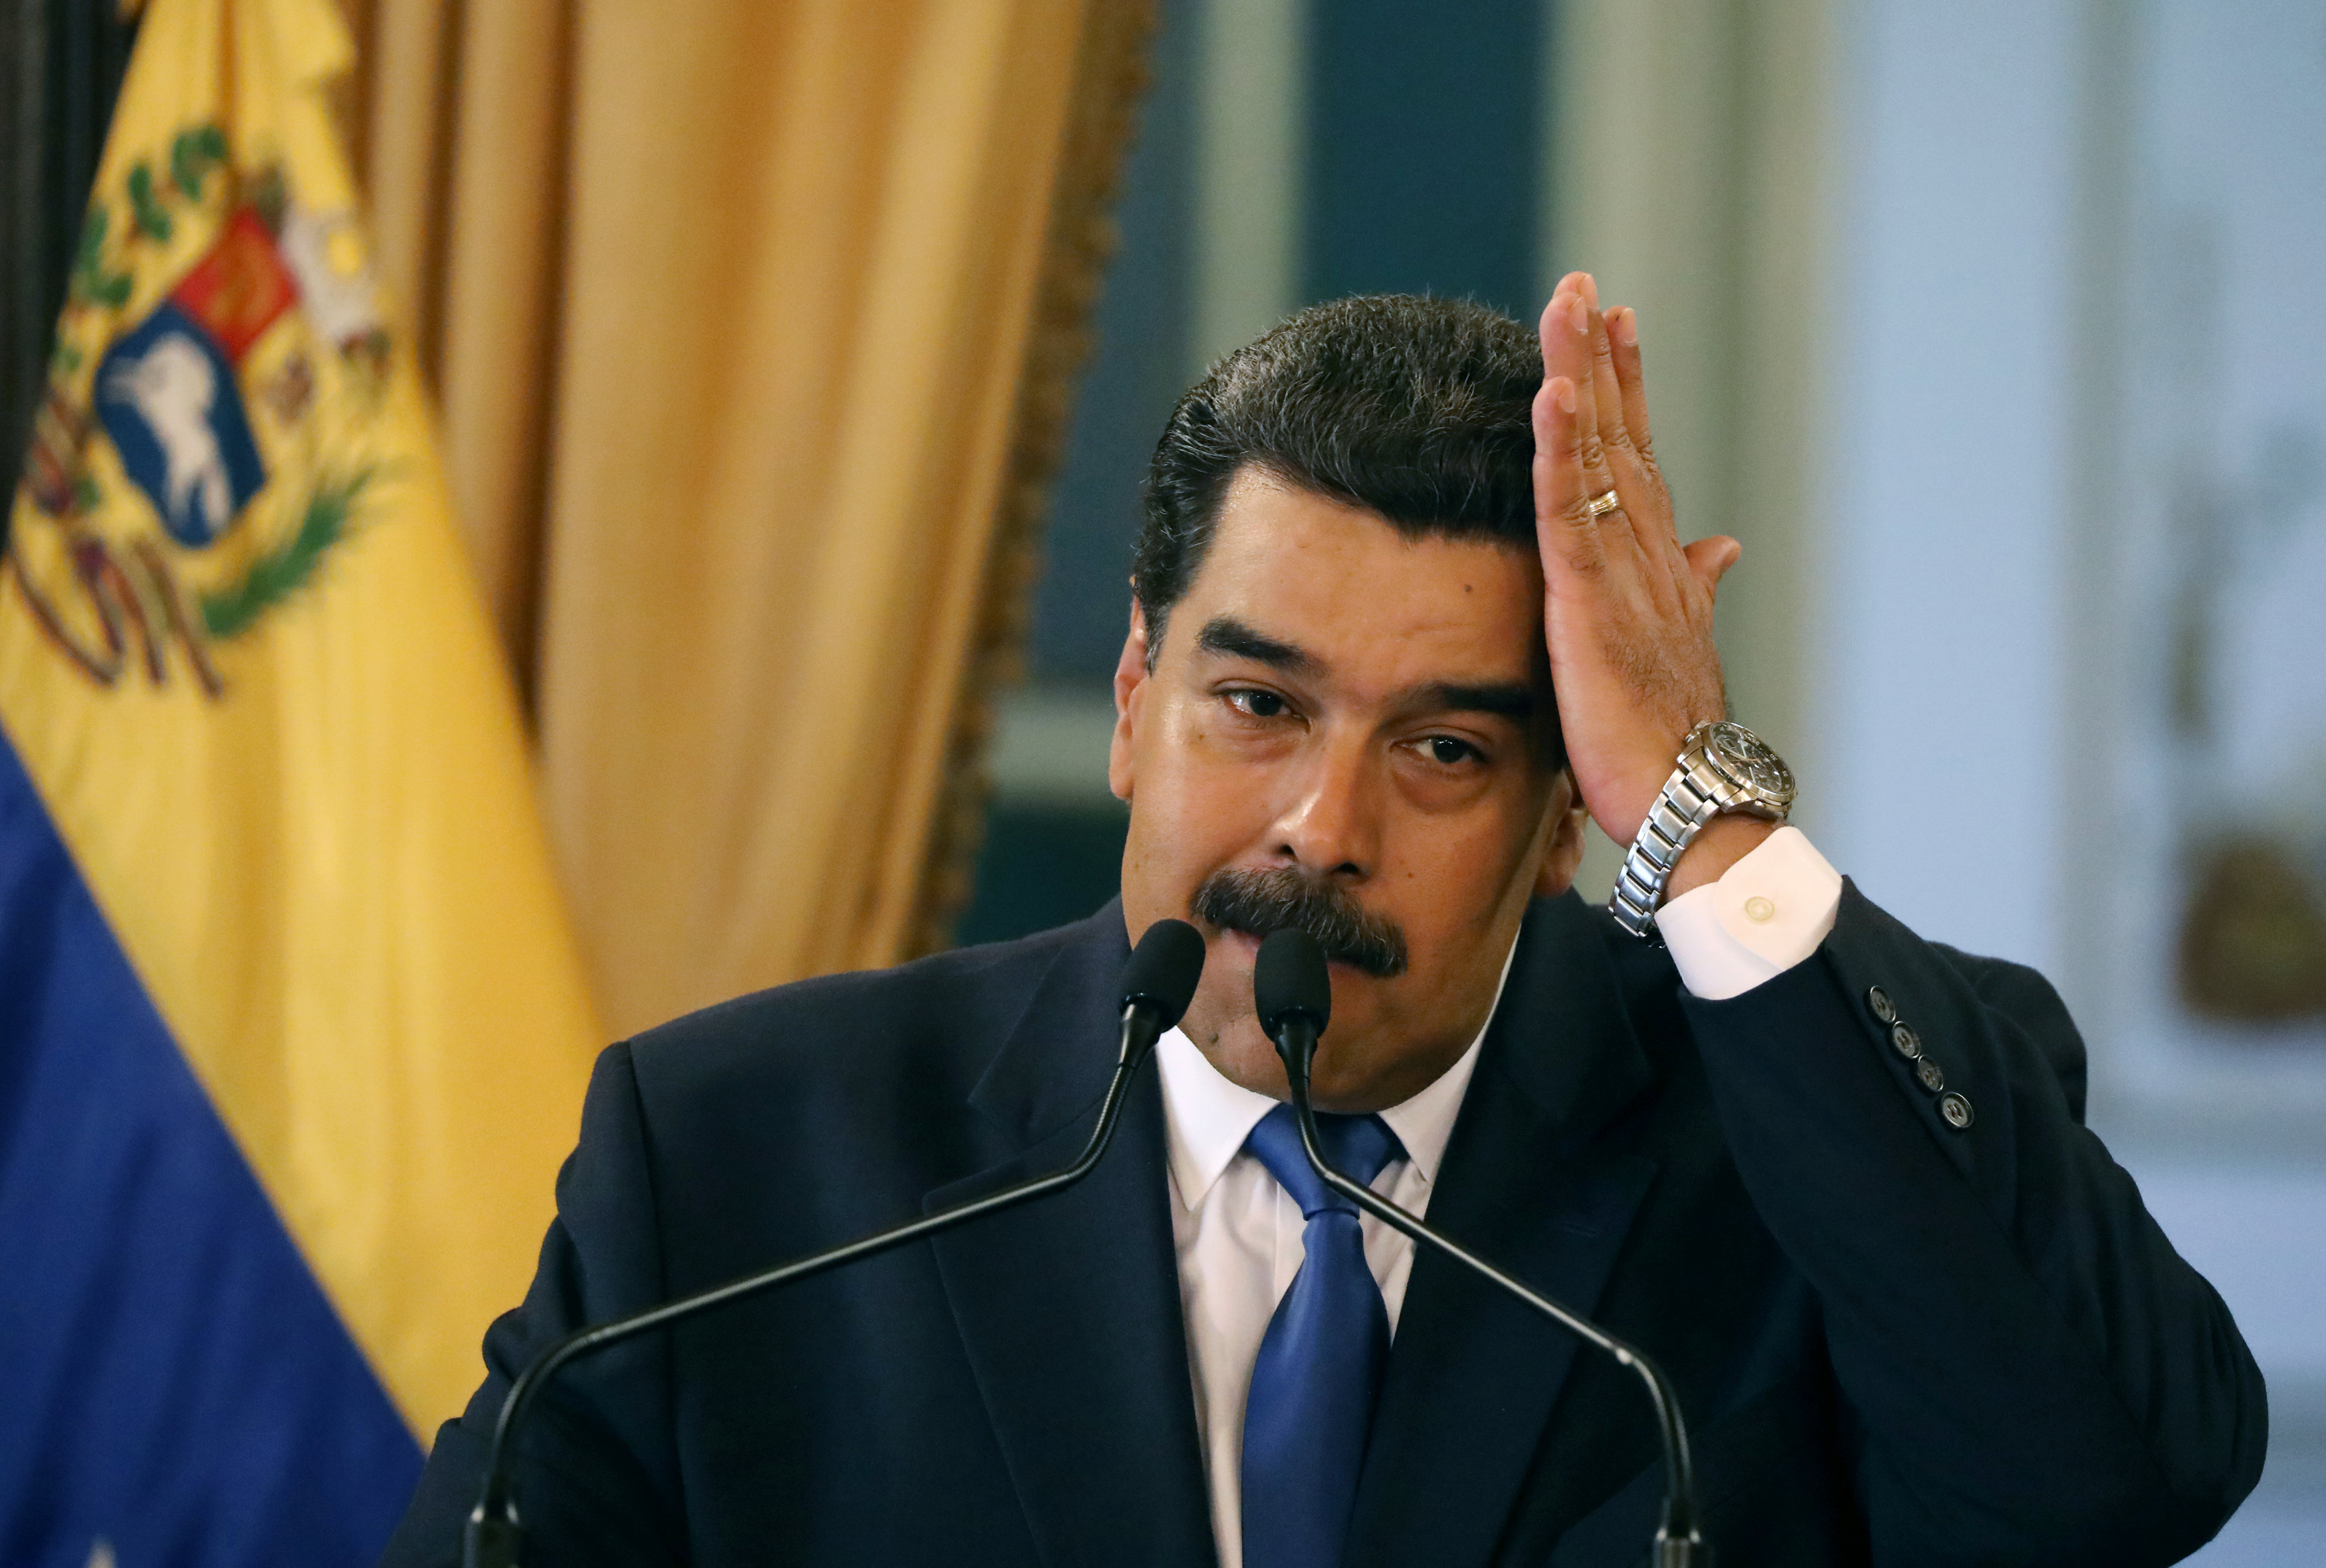 EEUU abierto a discutir planes de salida de Maduro, según CNN